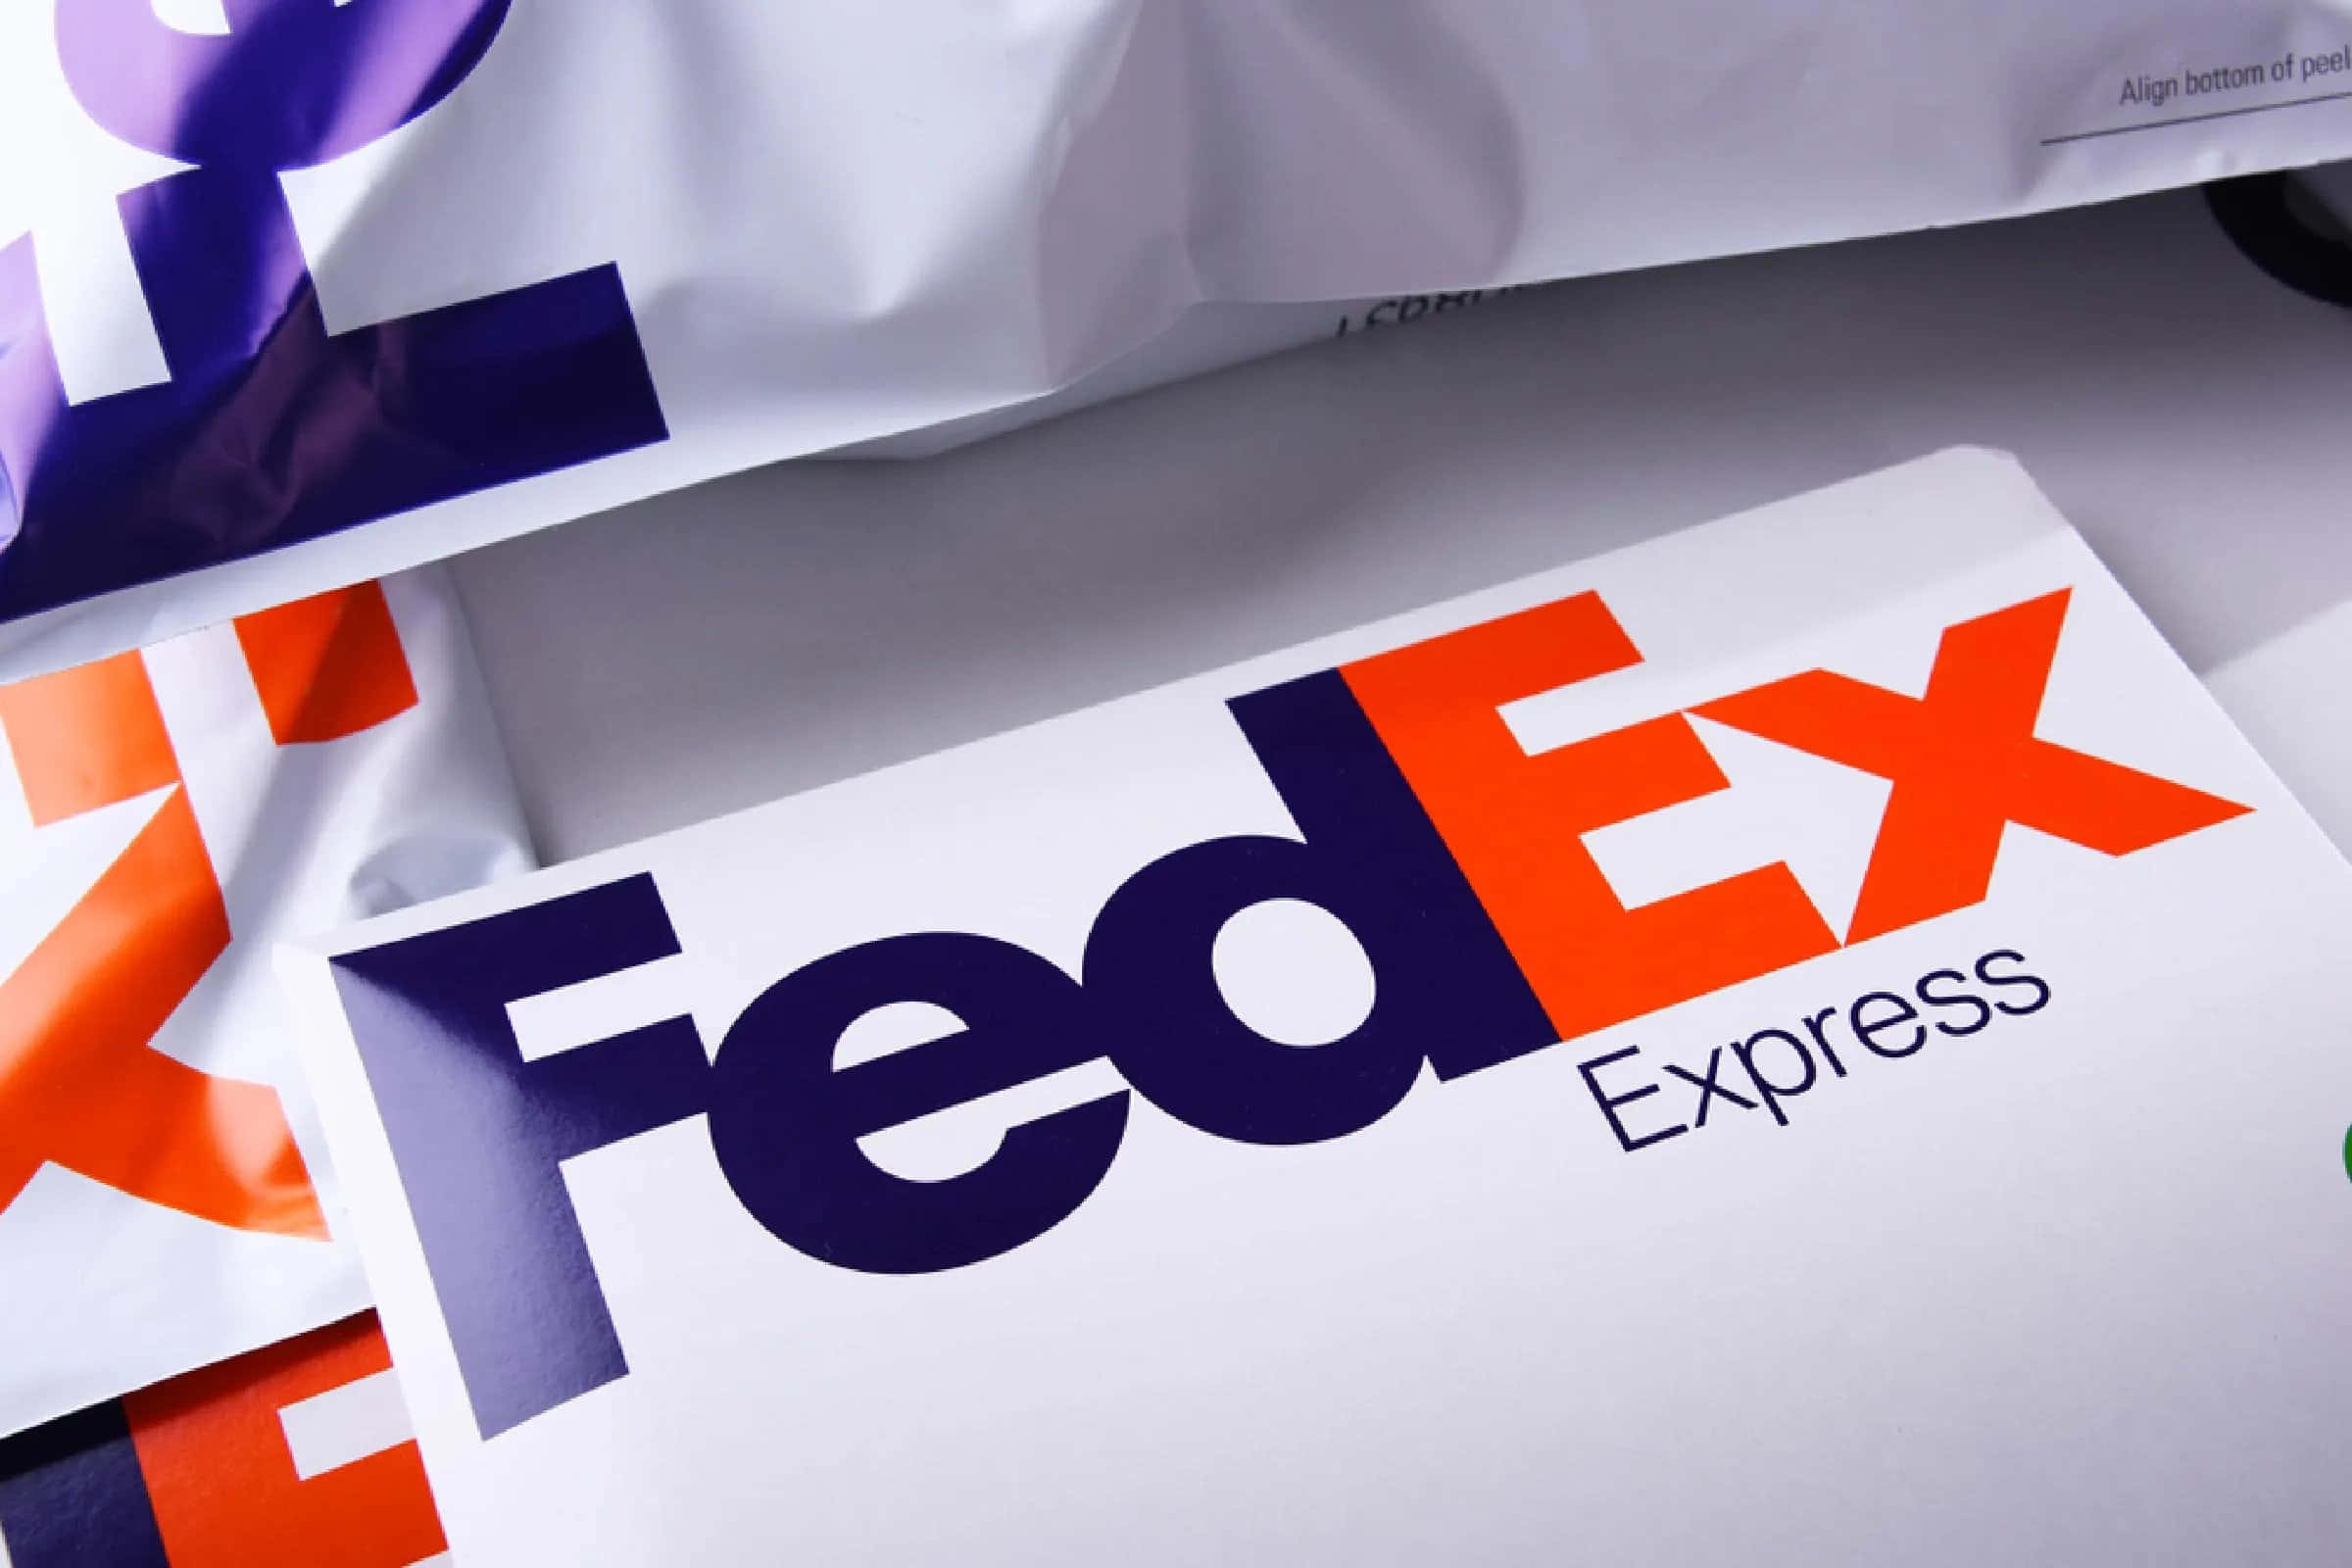 Fedexexpress Logoer På En Hvid Baggrund.